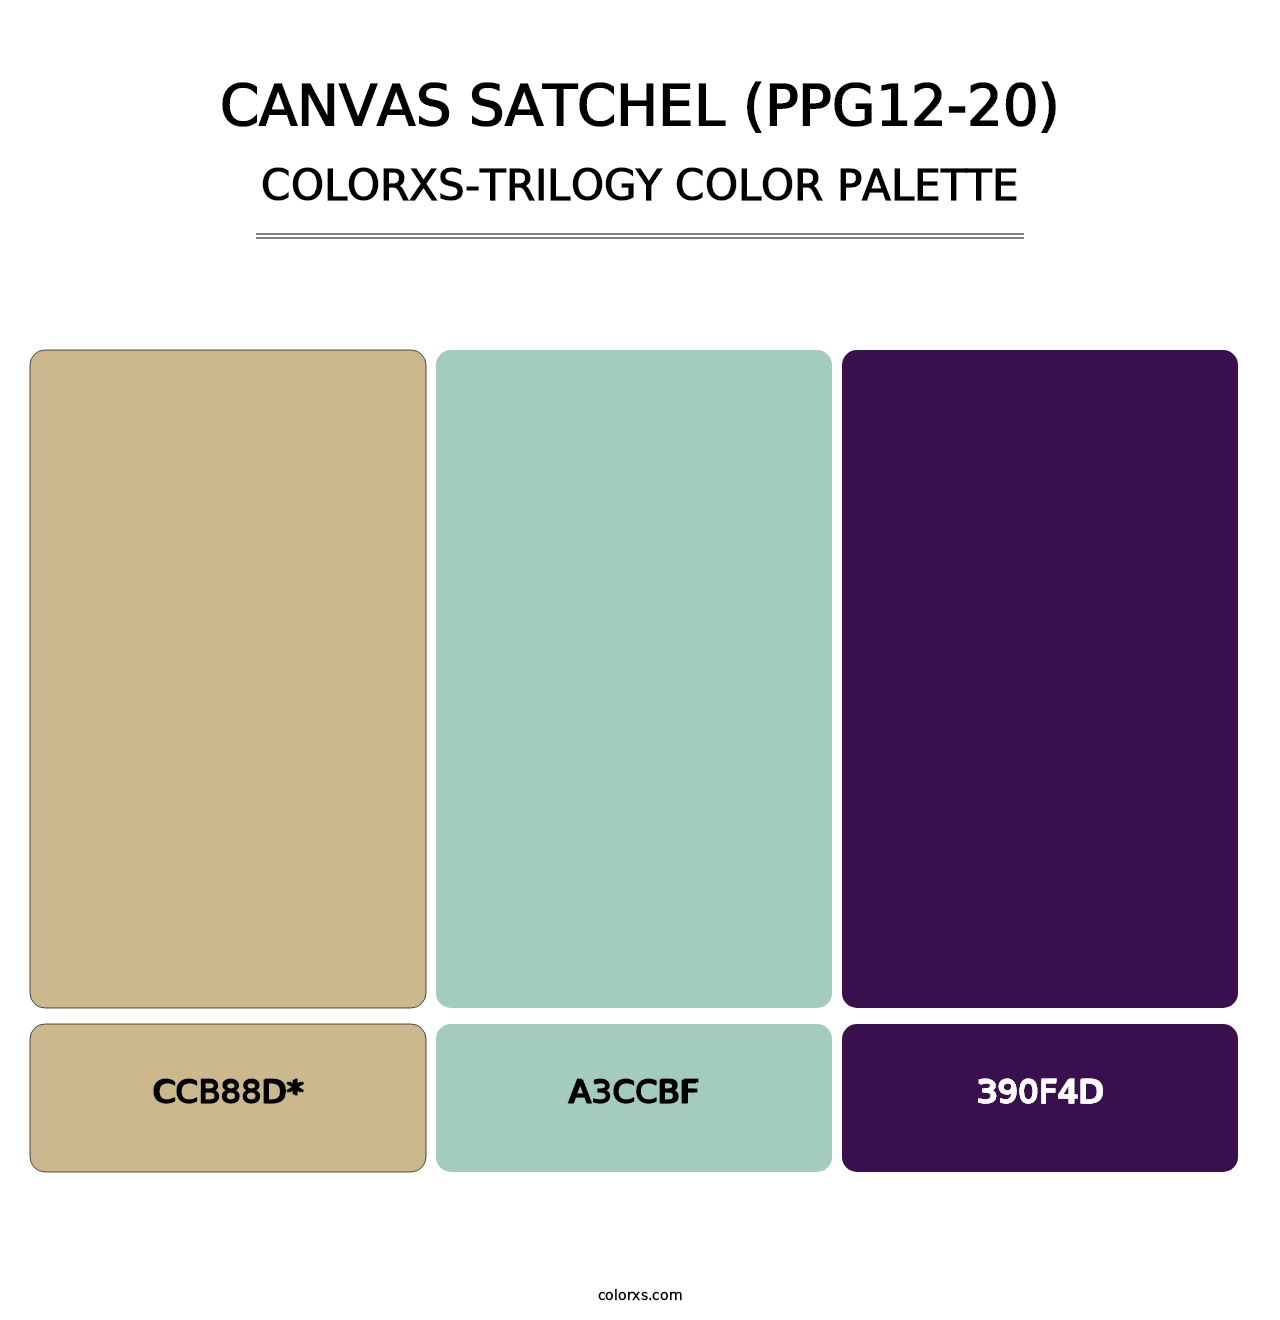 Canvas Satchel (PPG12-20) - Colorxs Trilogy Palette